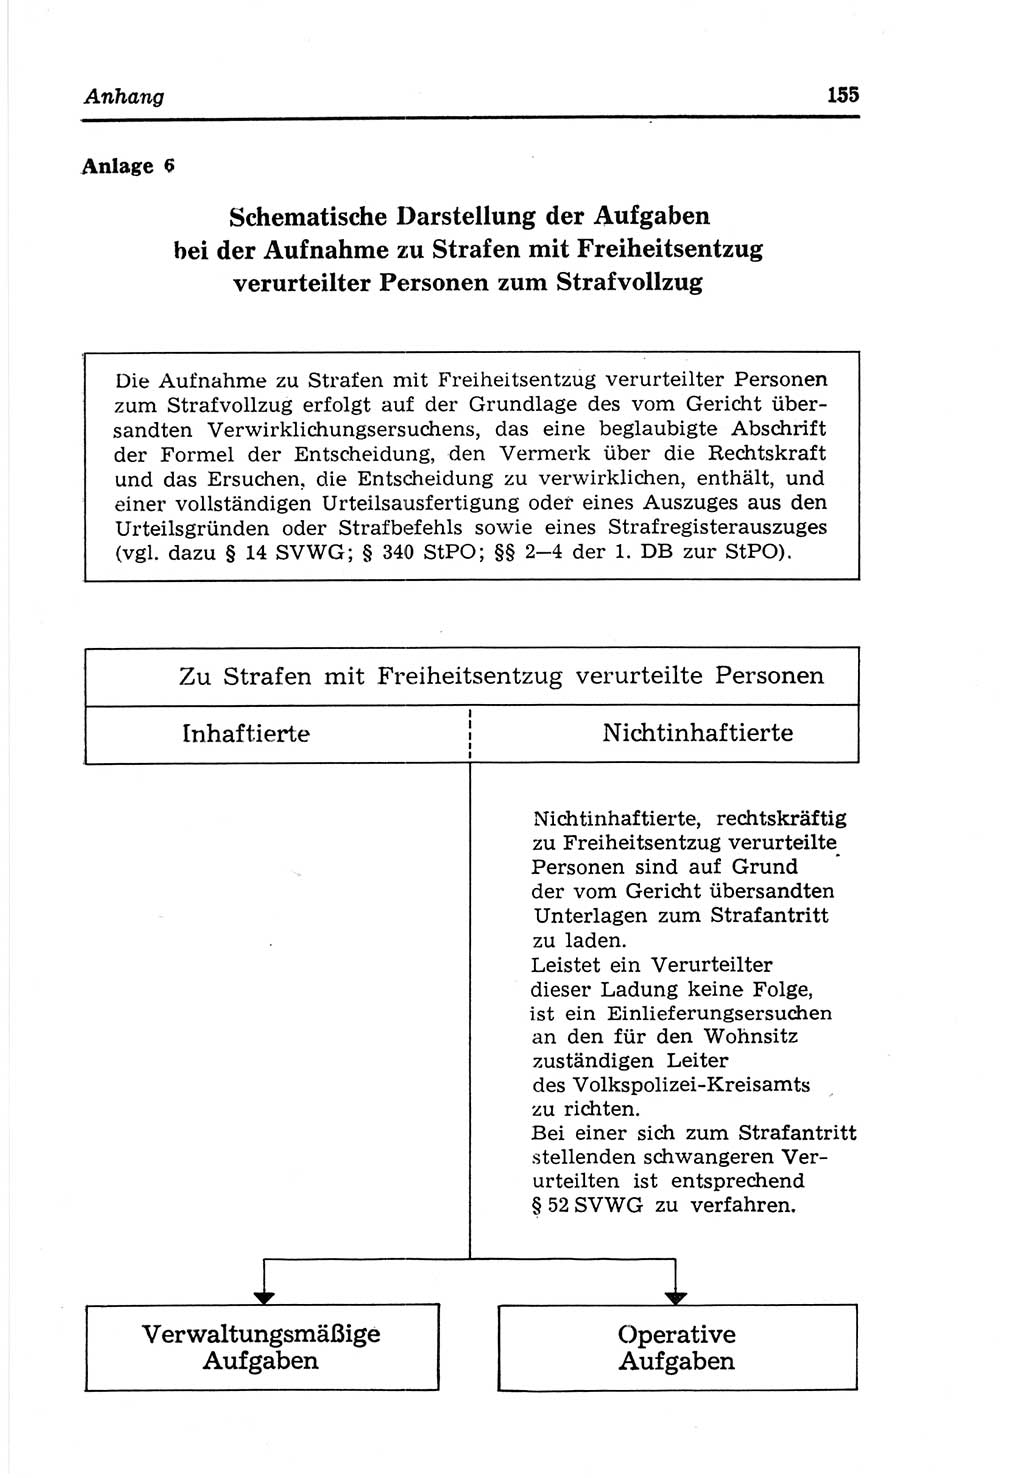 Strafvollzugs- und Wiedereingliederungsgesetz (SVWG) der Deutschen Demokratischen Republik (DDR) 1968, Seite 155 (SVWG DDR 1968, S. 155)